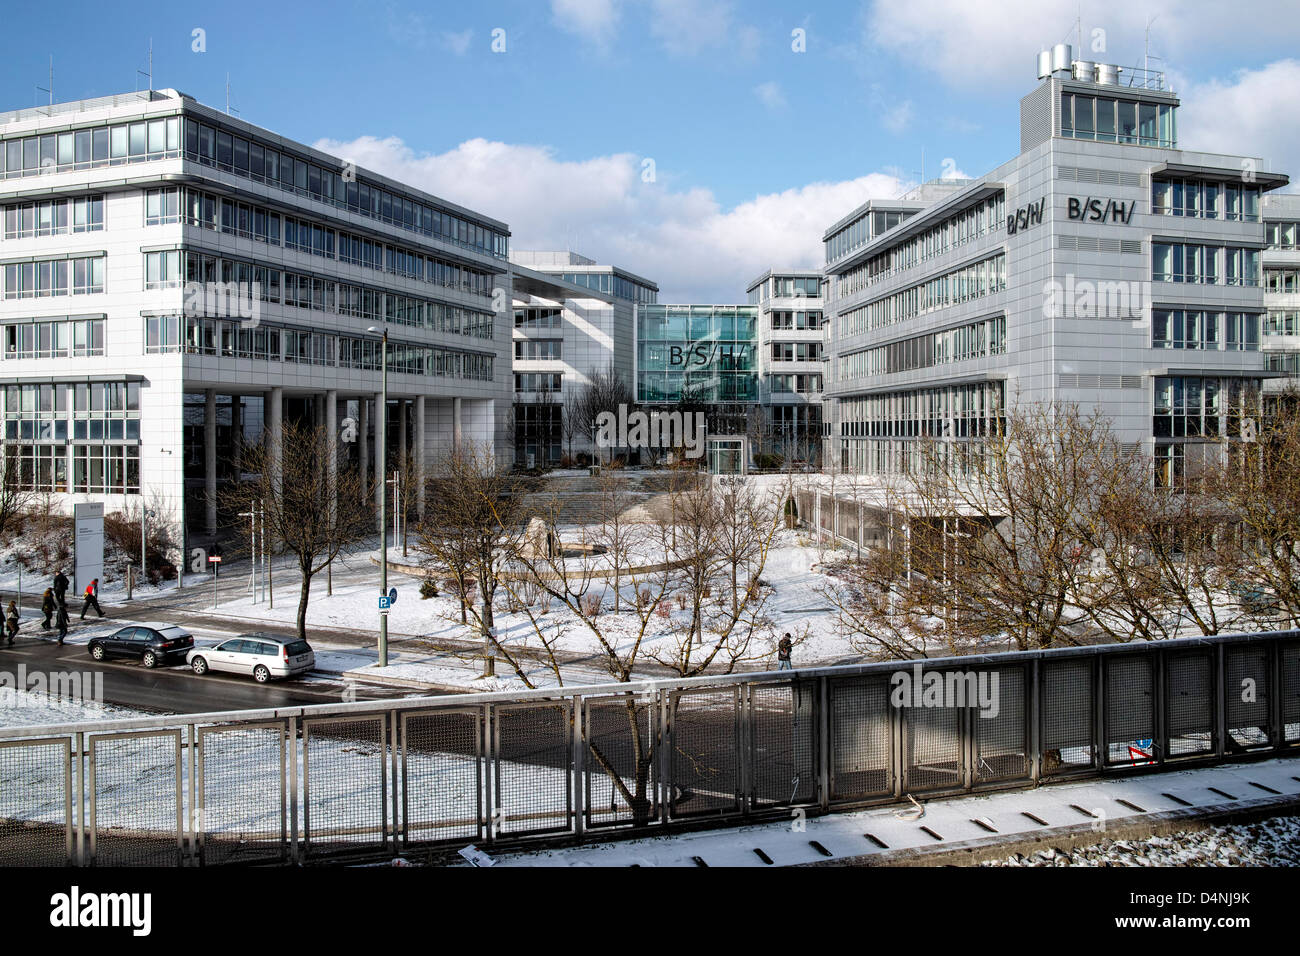 BSH Bosch Siemens Haushaltsgeräte headquarters in Munich Stock Photo - Alamy